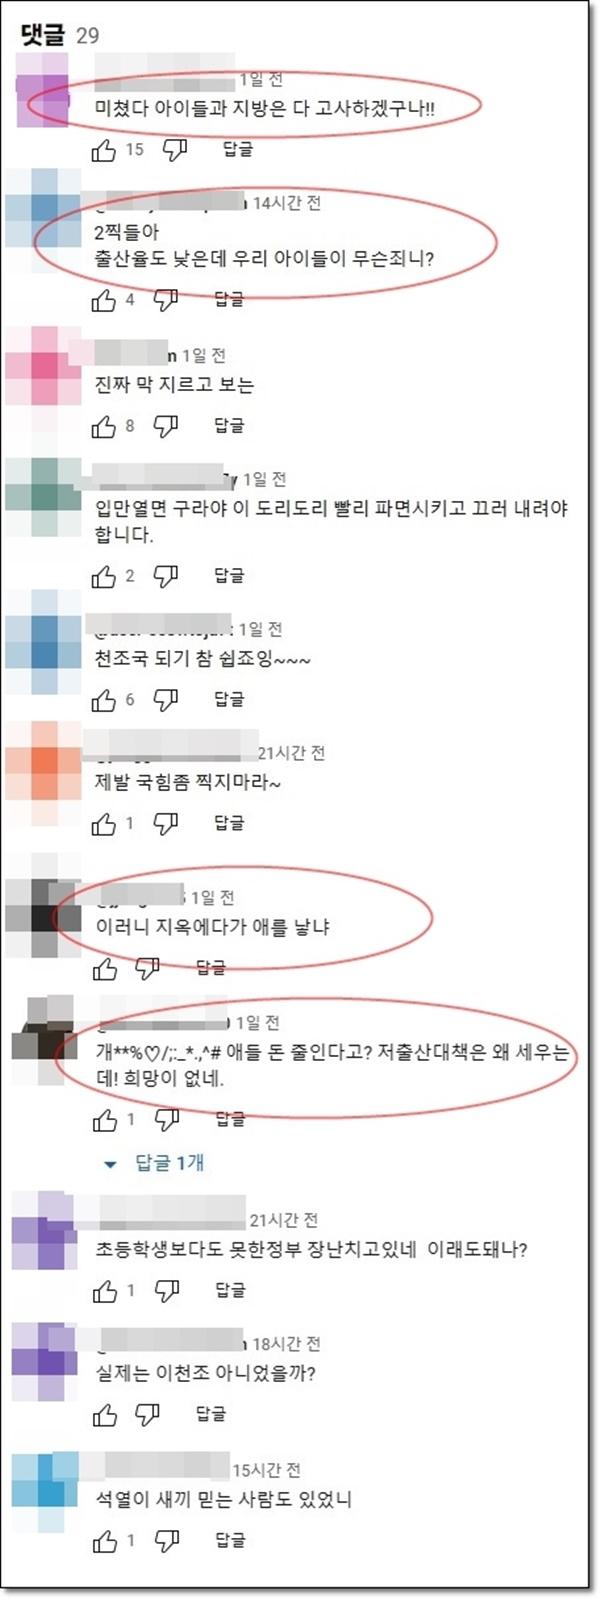 굥산주의 예산정책(아이들 예산 줄인다).jpg